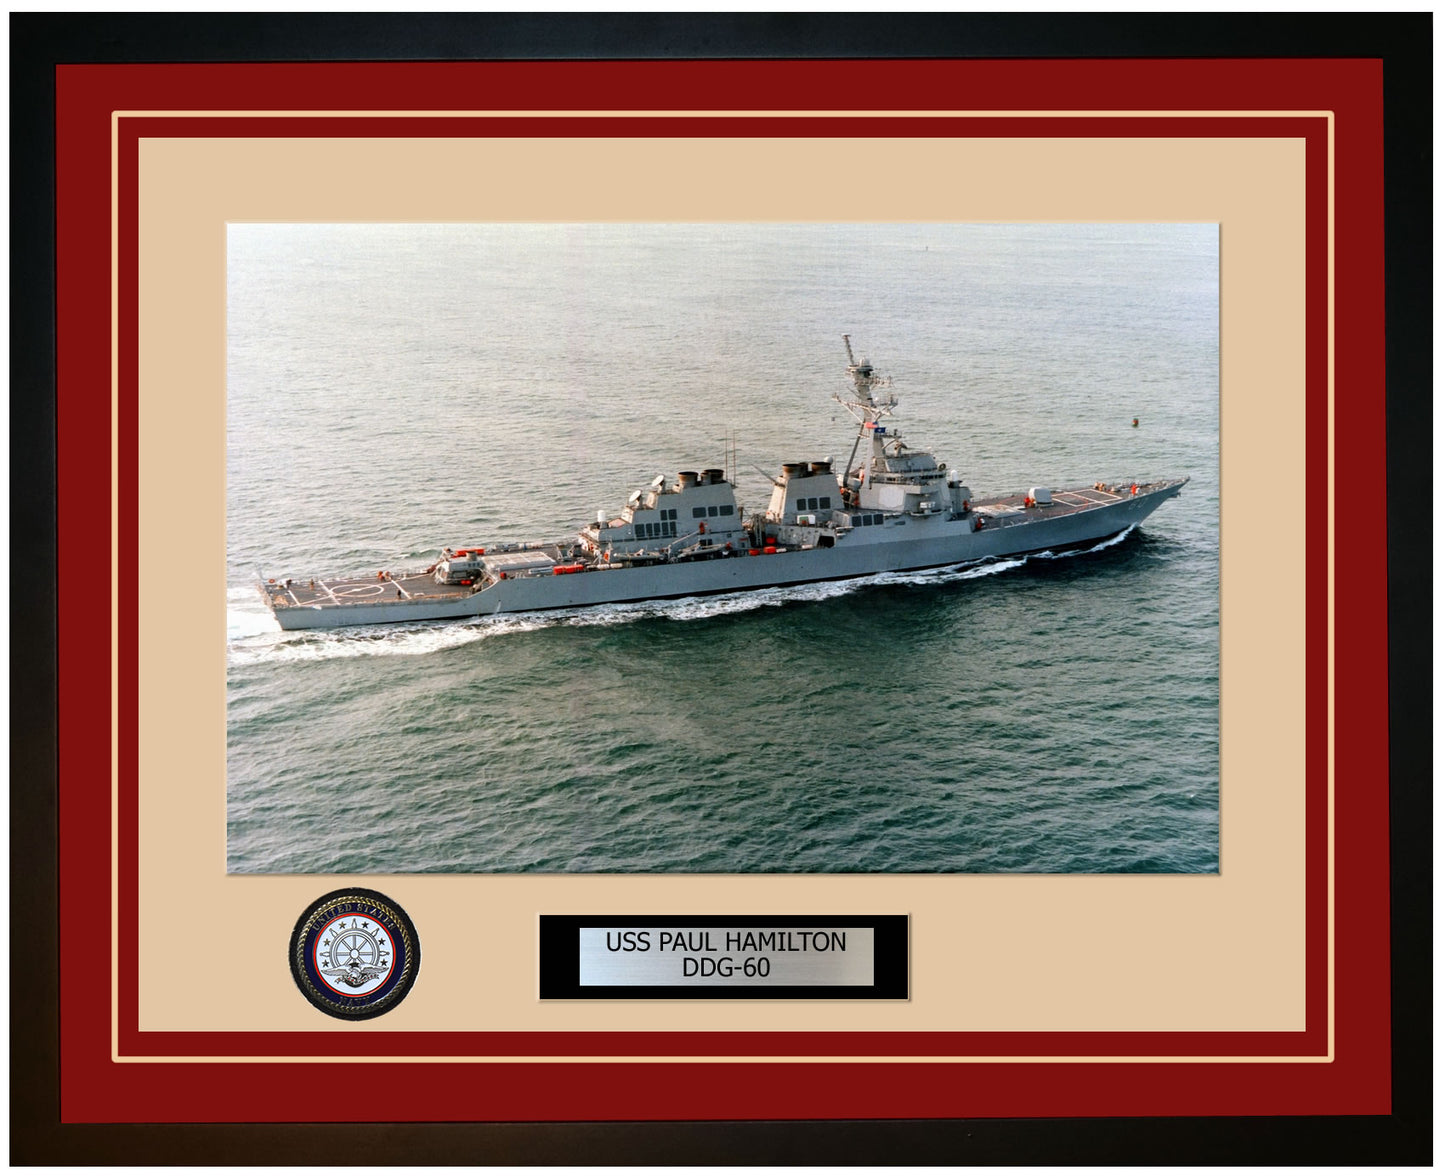 USS PAUL HAMILTON DDG-60 Framed Navy Ship Photo Burgundy